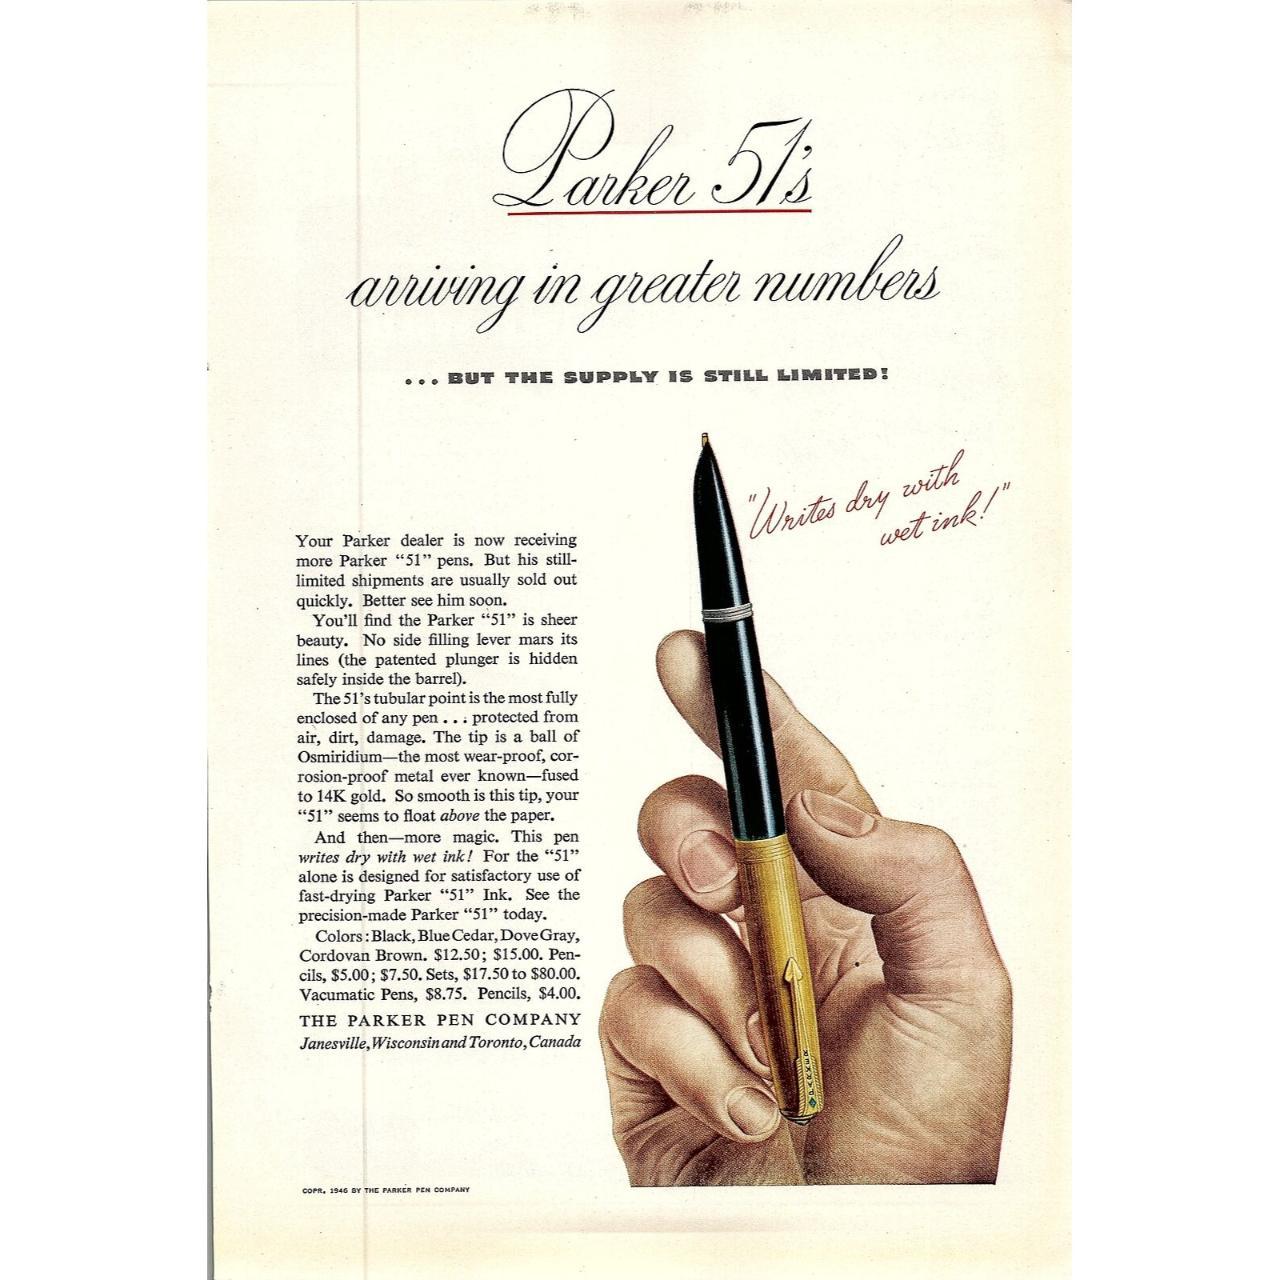 Product Image 2 - 1946 PARKER PEN COMPANY PARKER